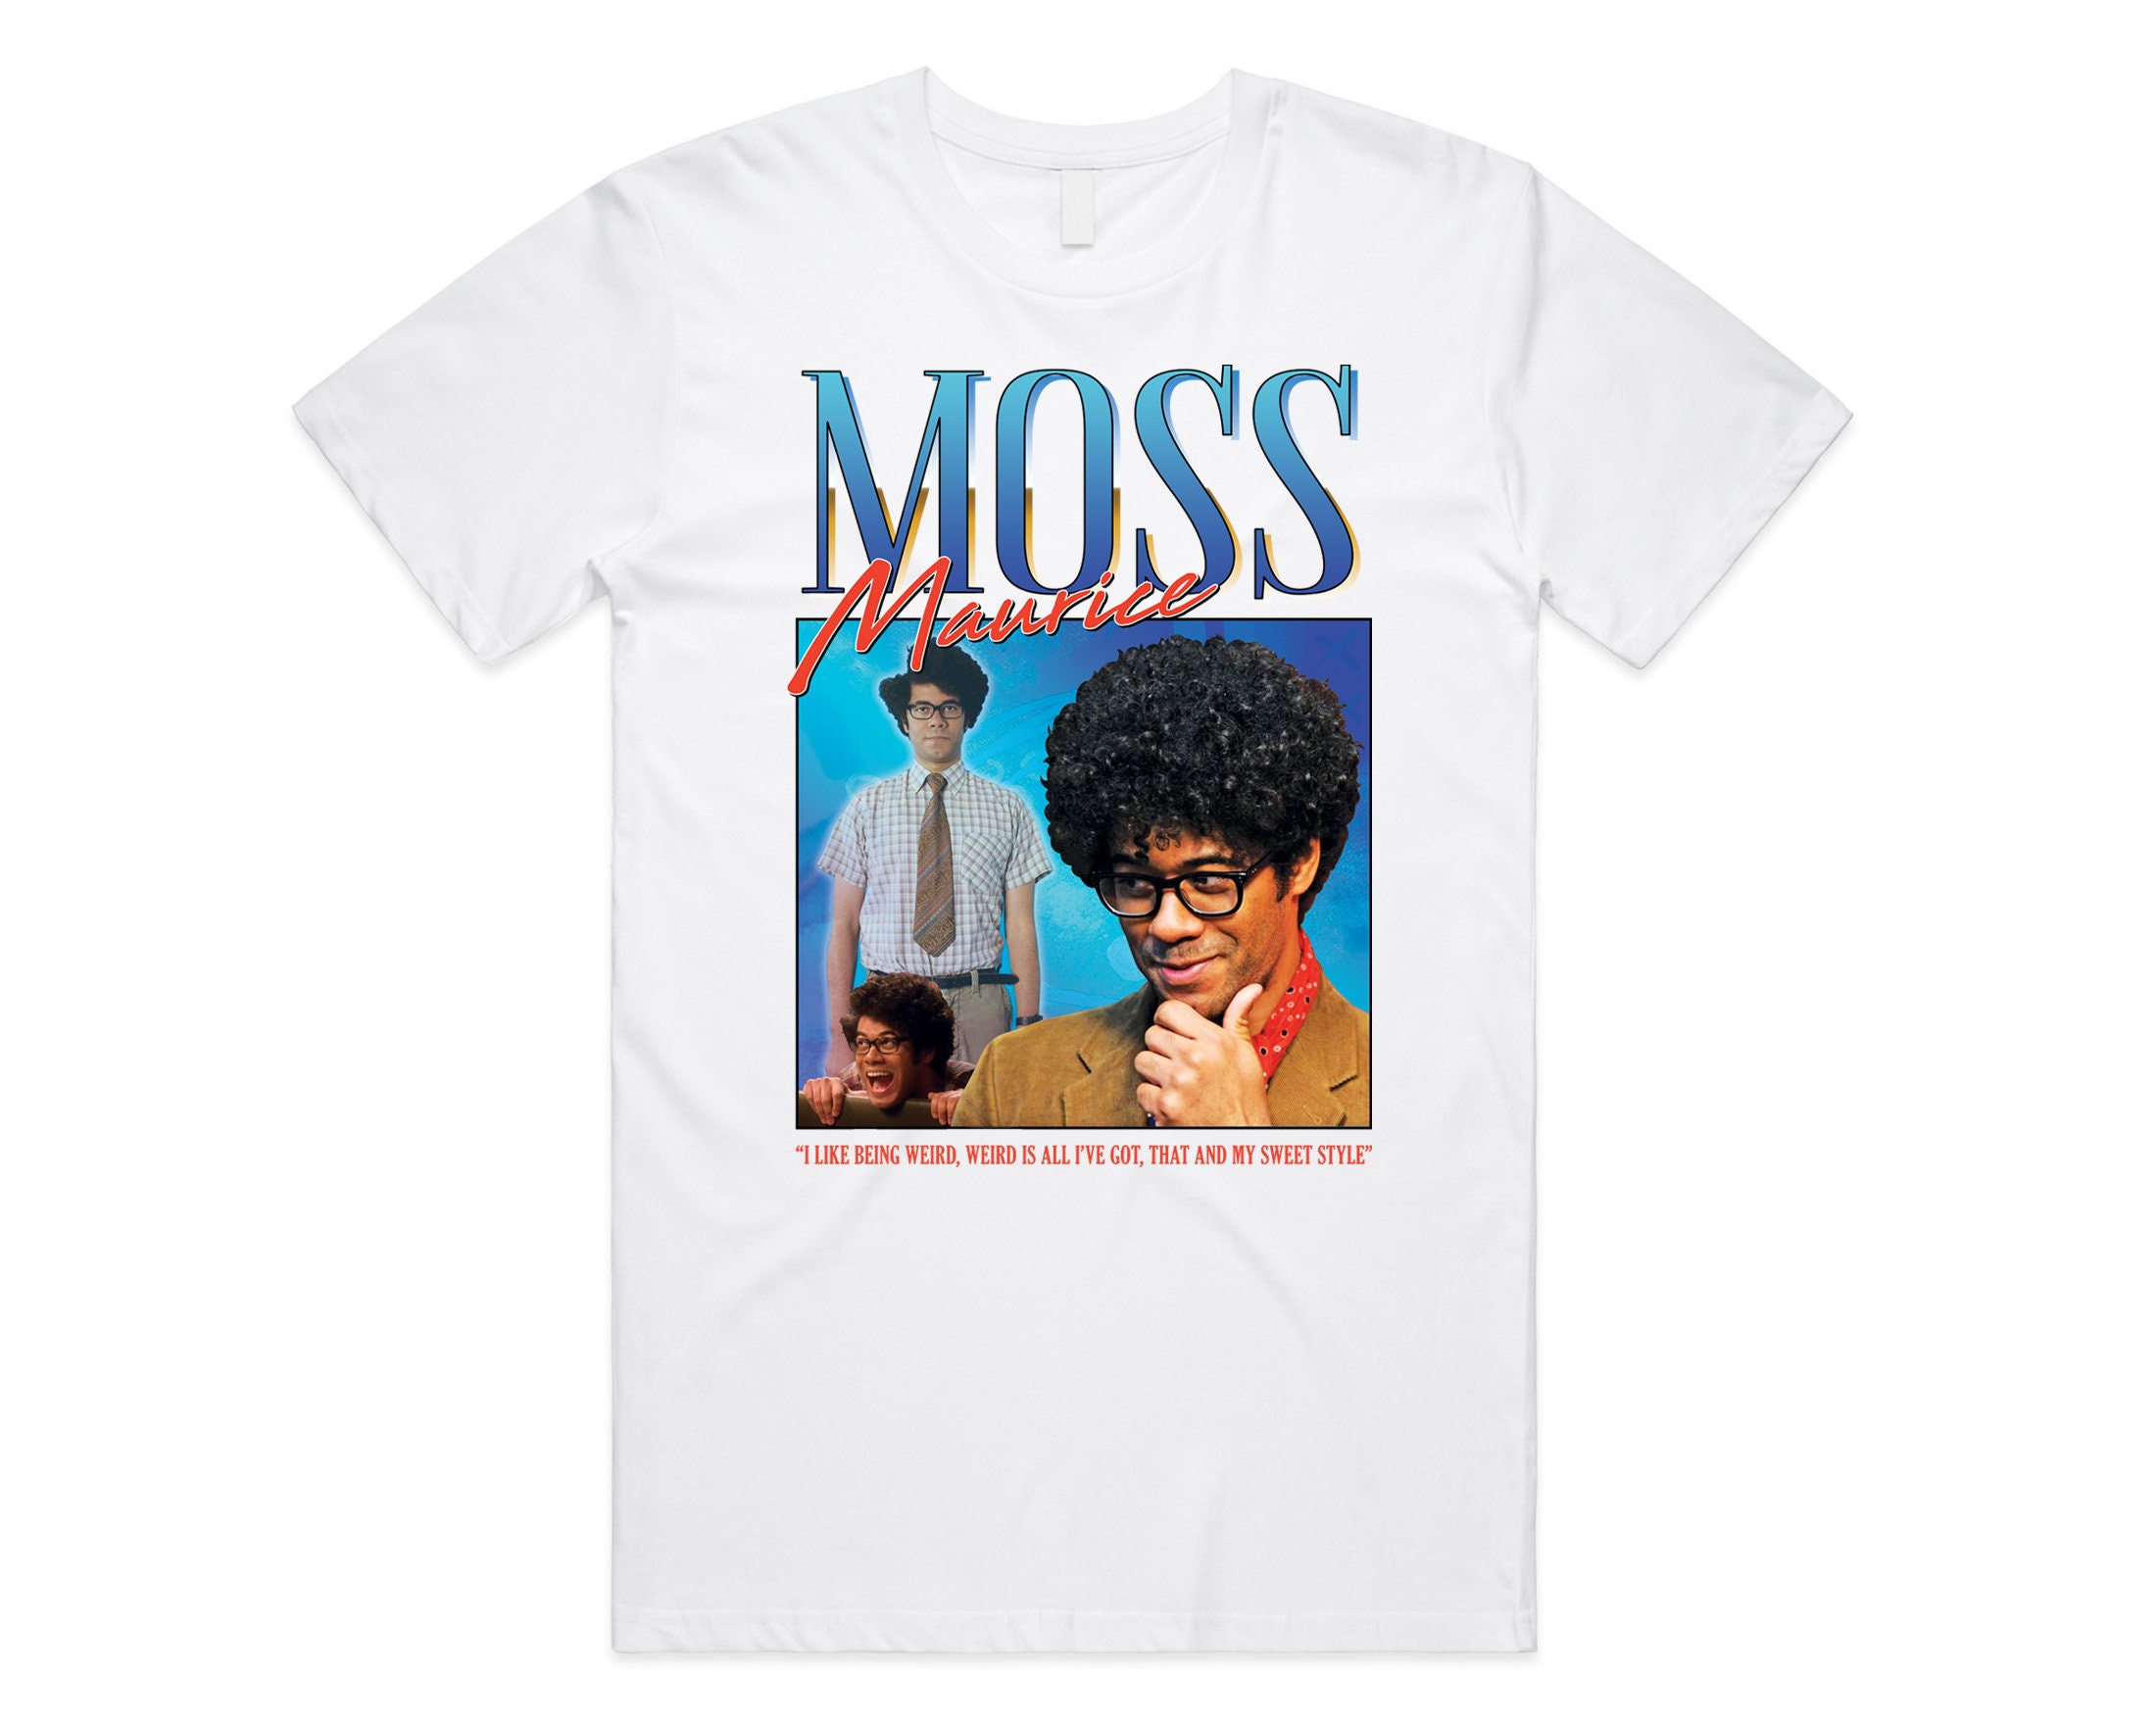 Moss Maurice Homage T-Shirt Tee Top Roy Jen It Nerd Geek Tv Show Retro 90’s Vintage Funny